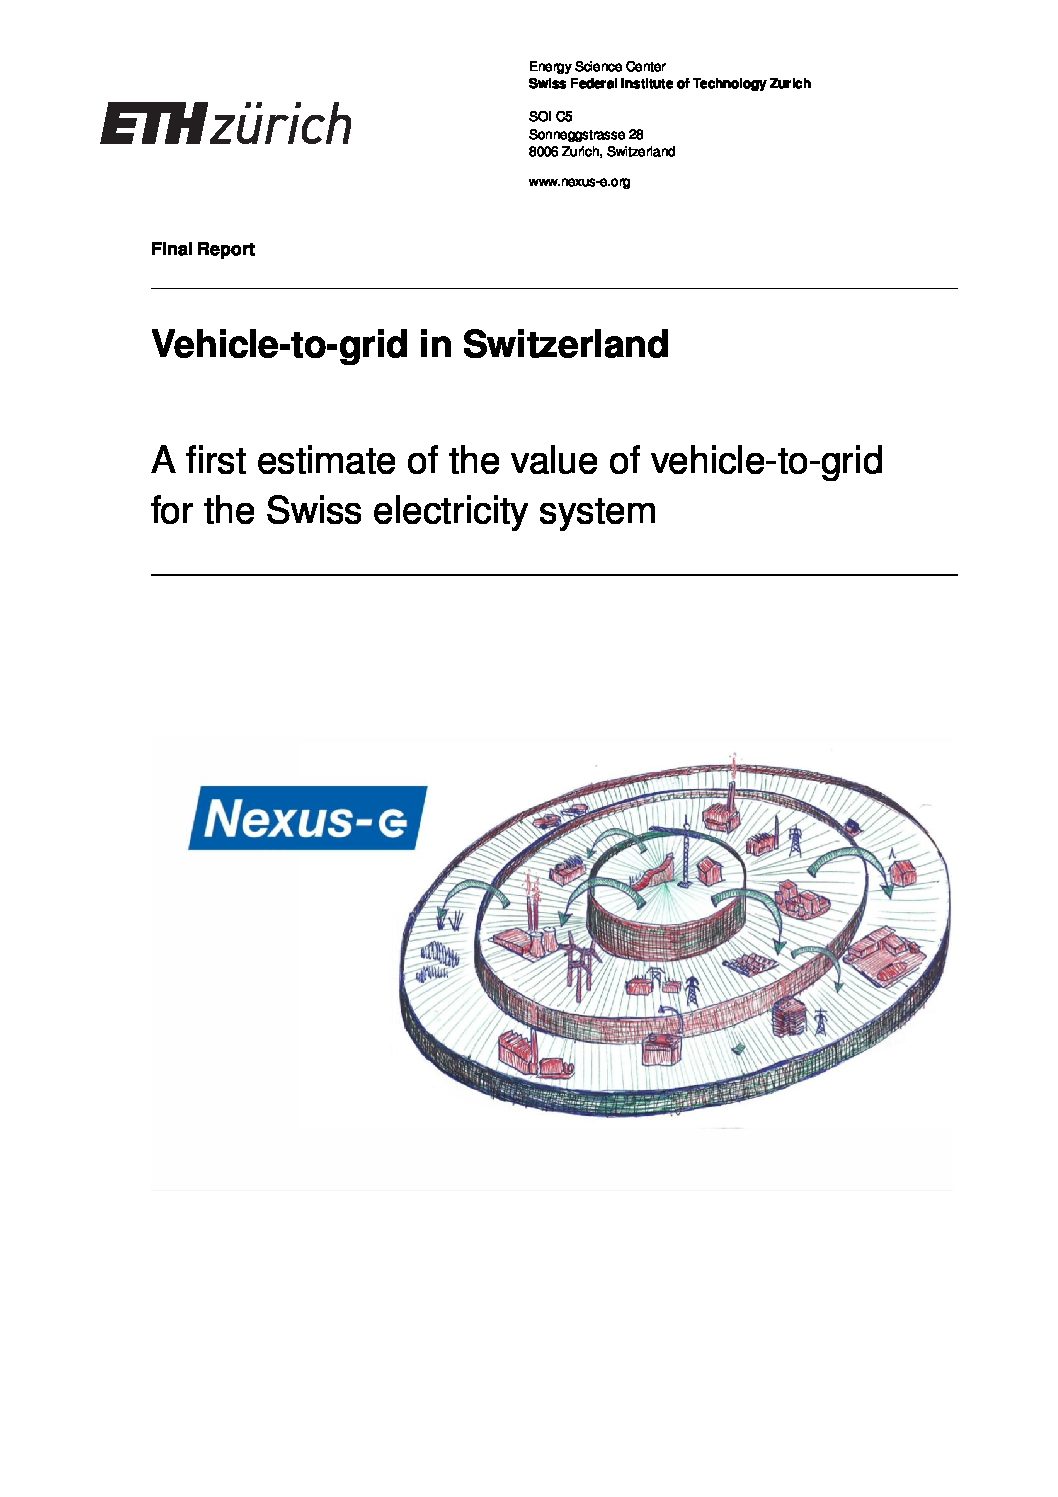 Vehicle-to-grid in Switzerland – ETH Zürich